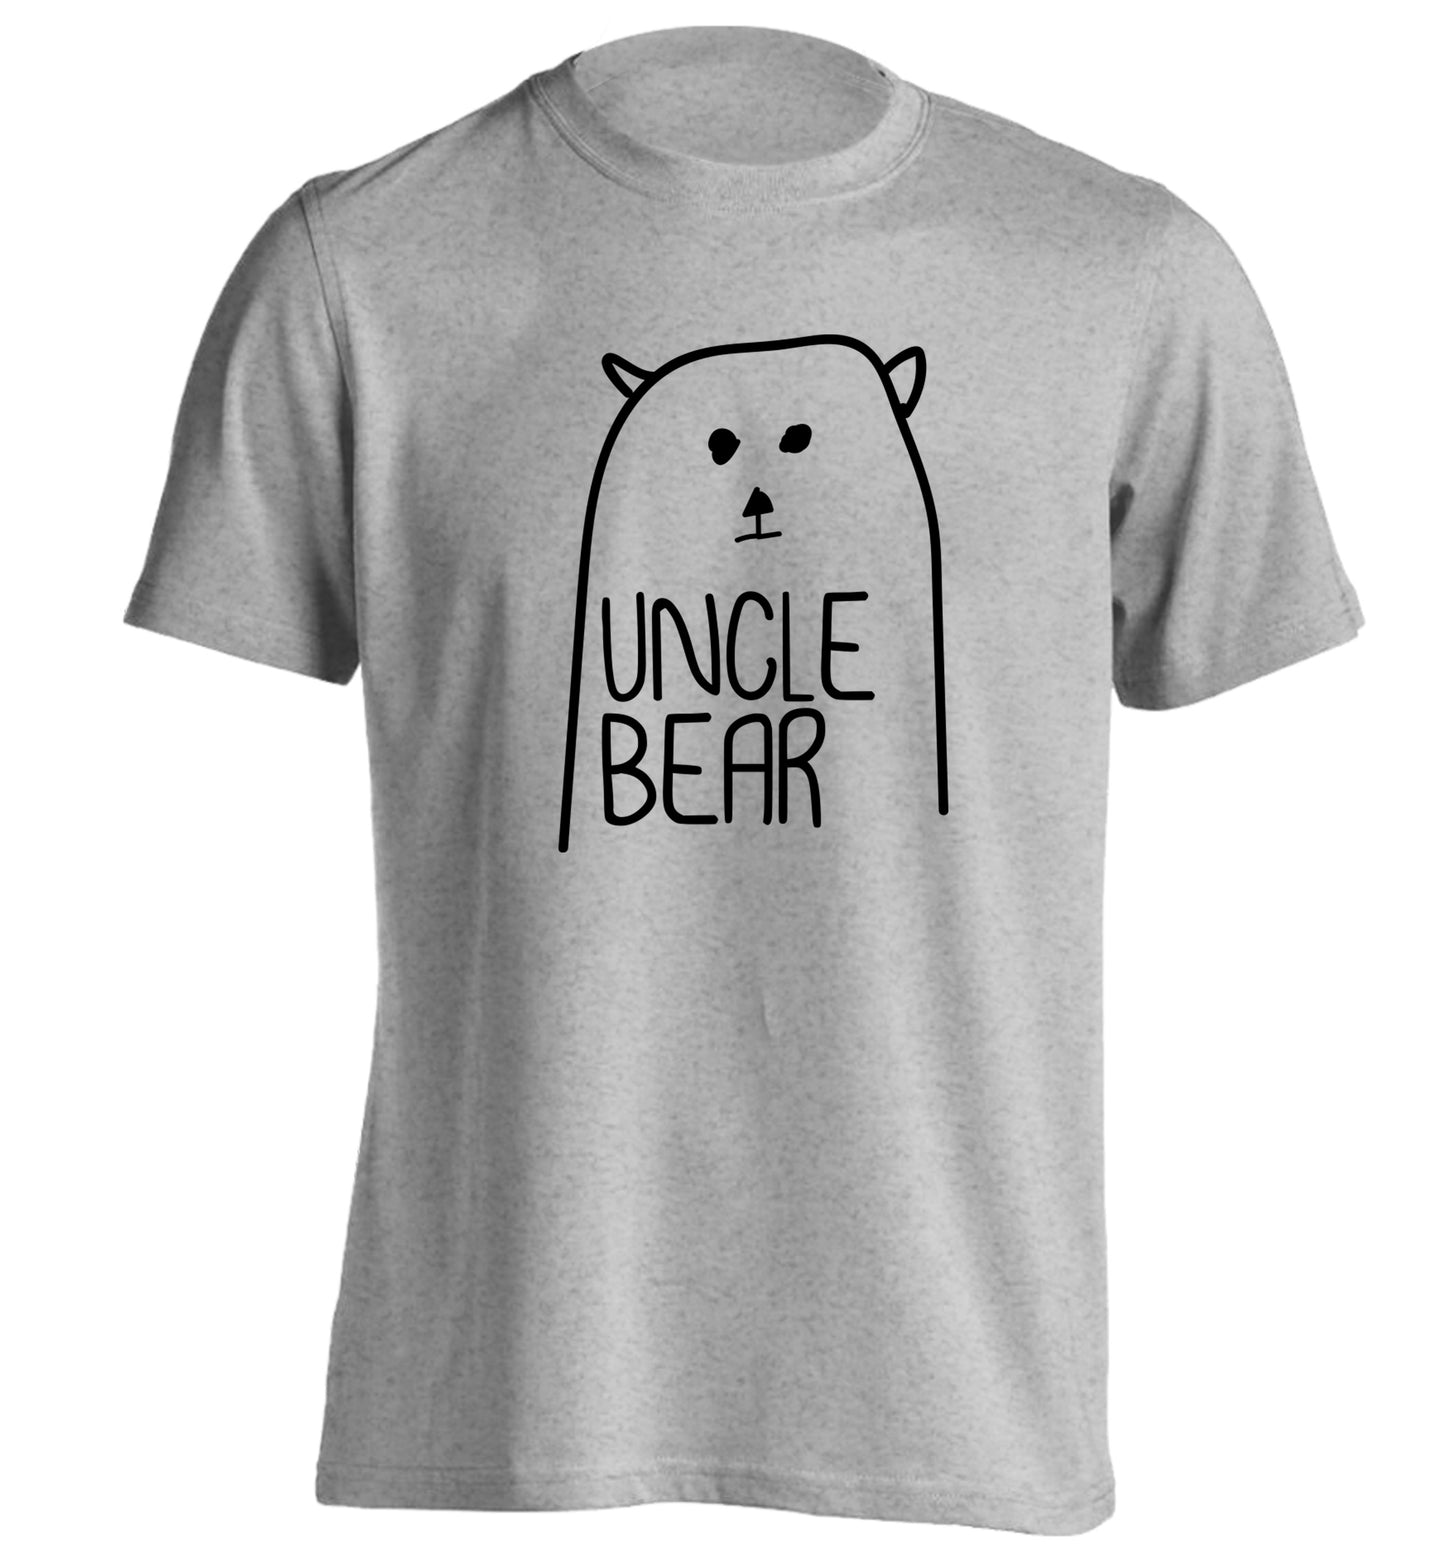 Uncle bear adults unisex grey Tshirt 2XL